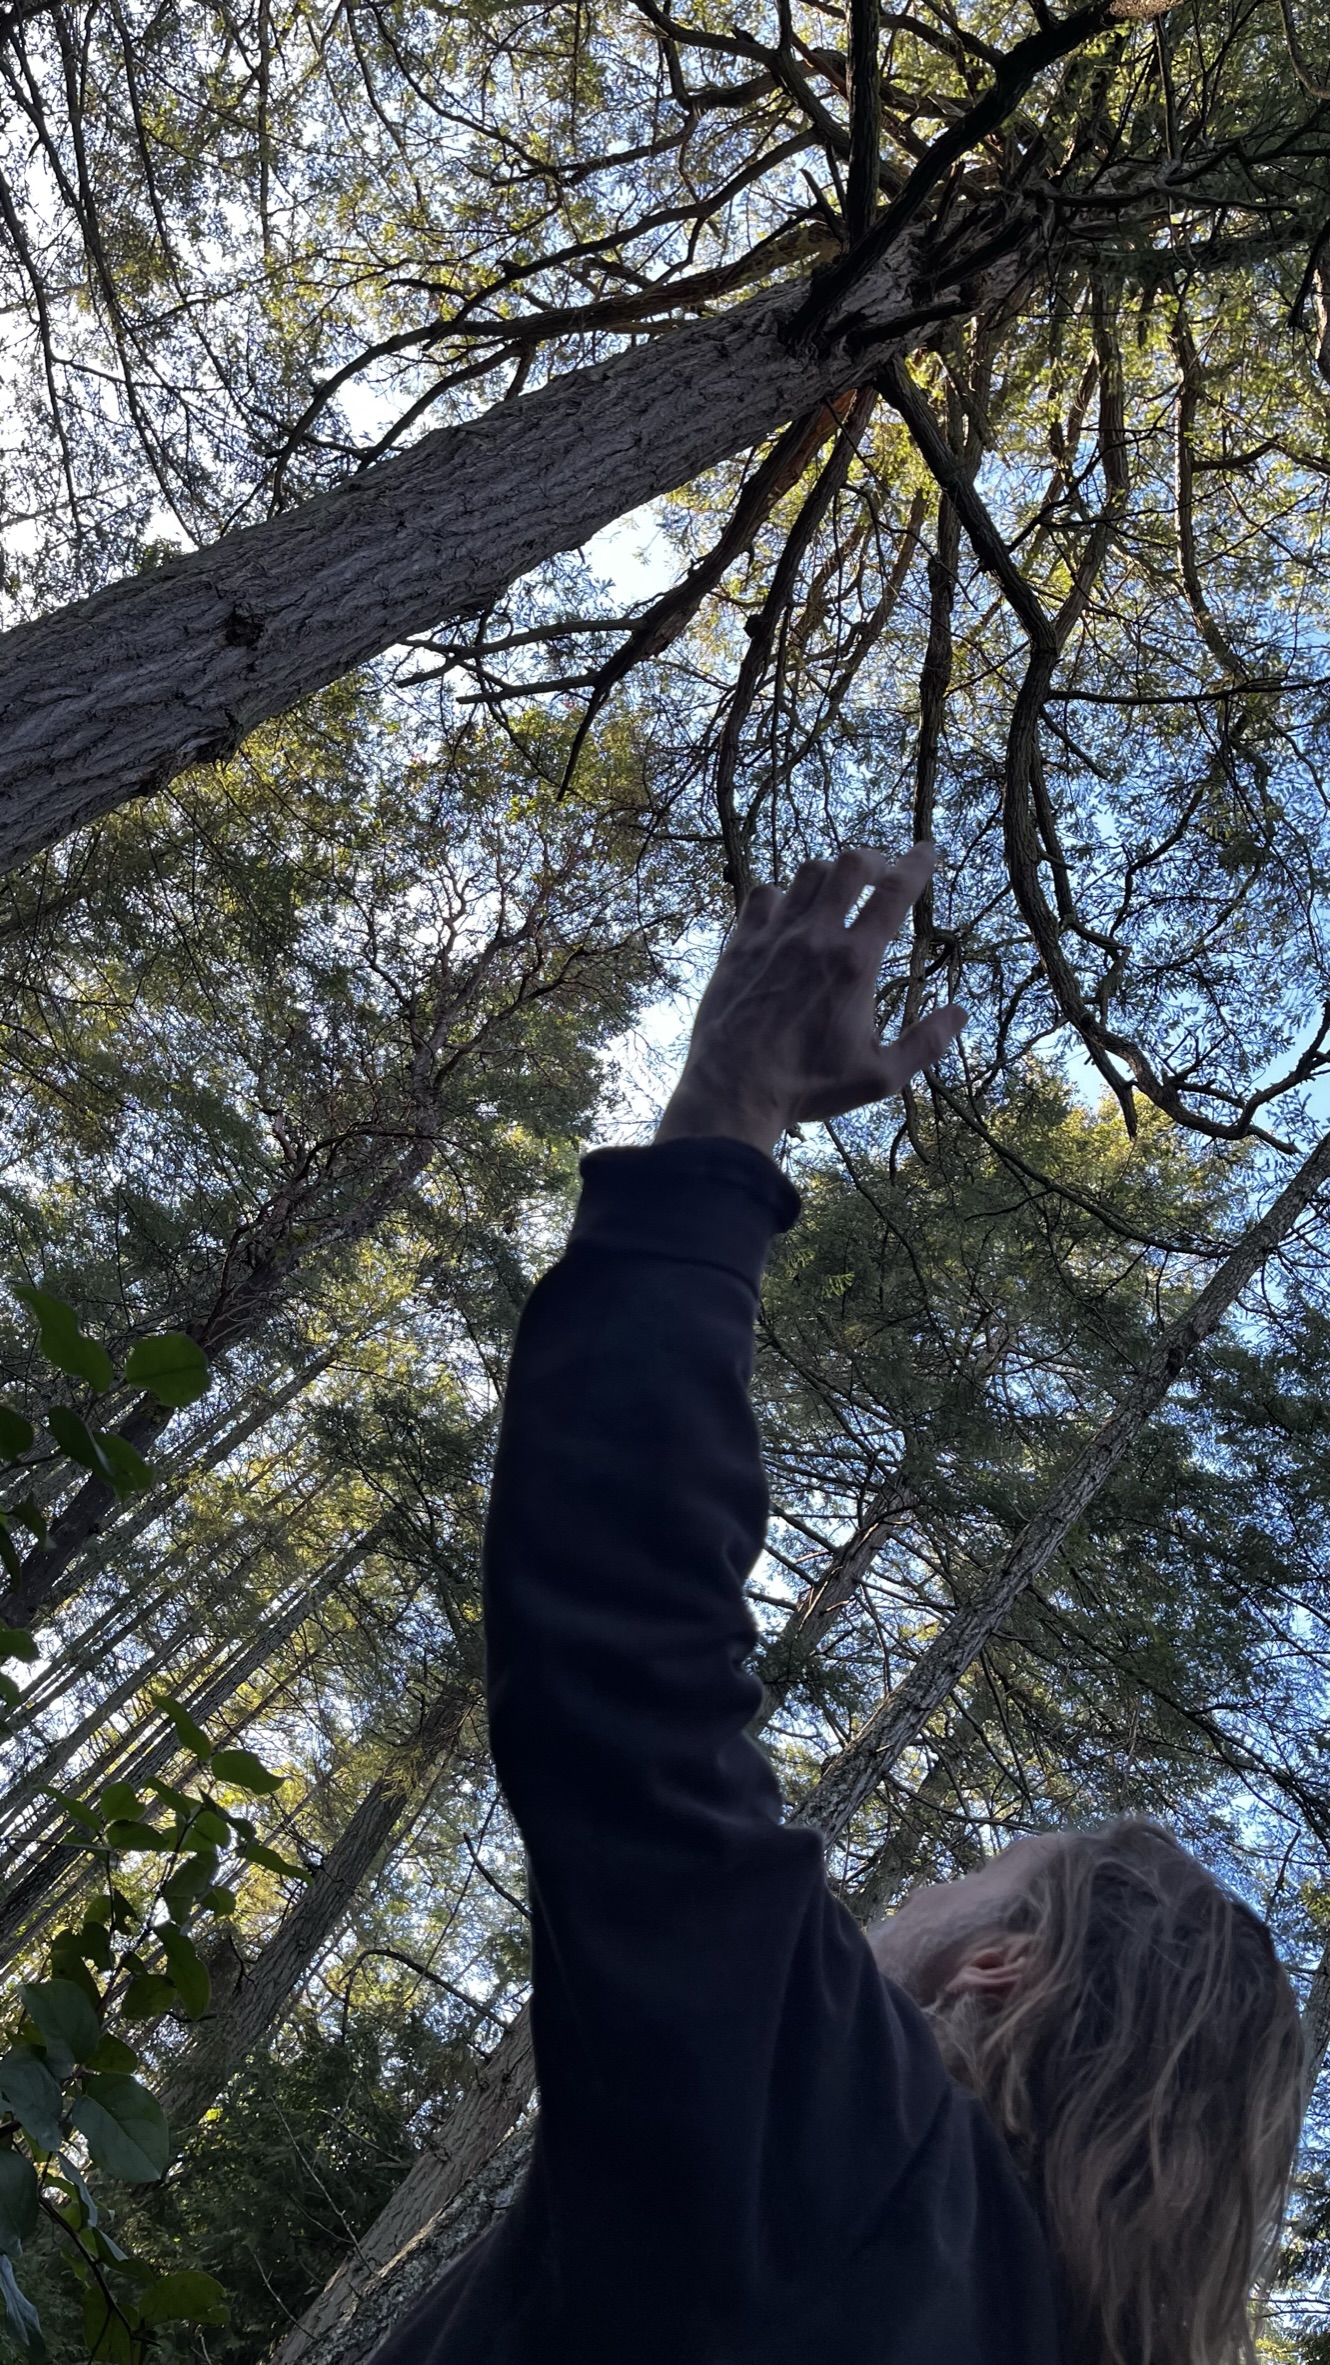 Sam reaching up to the Coastal Douglas fir